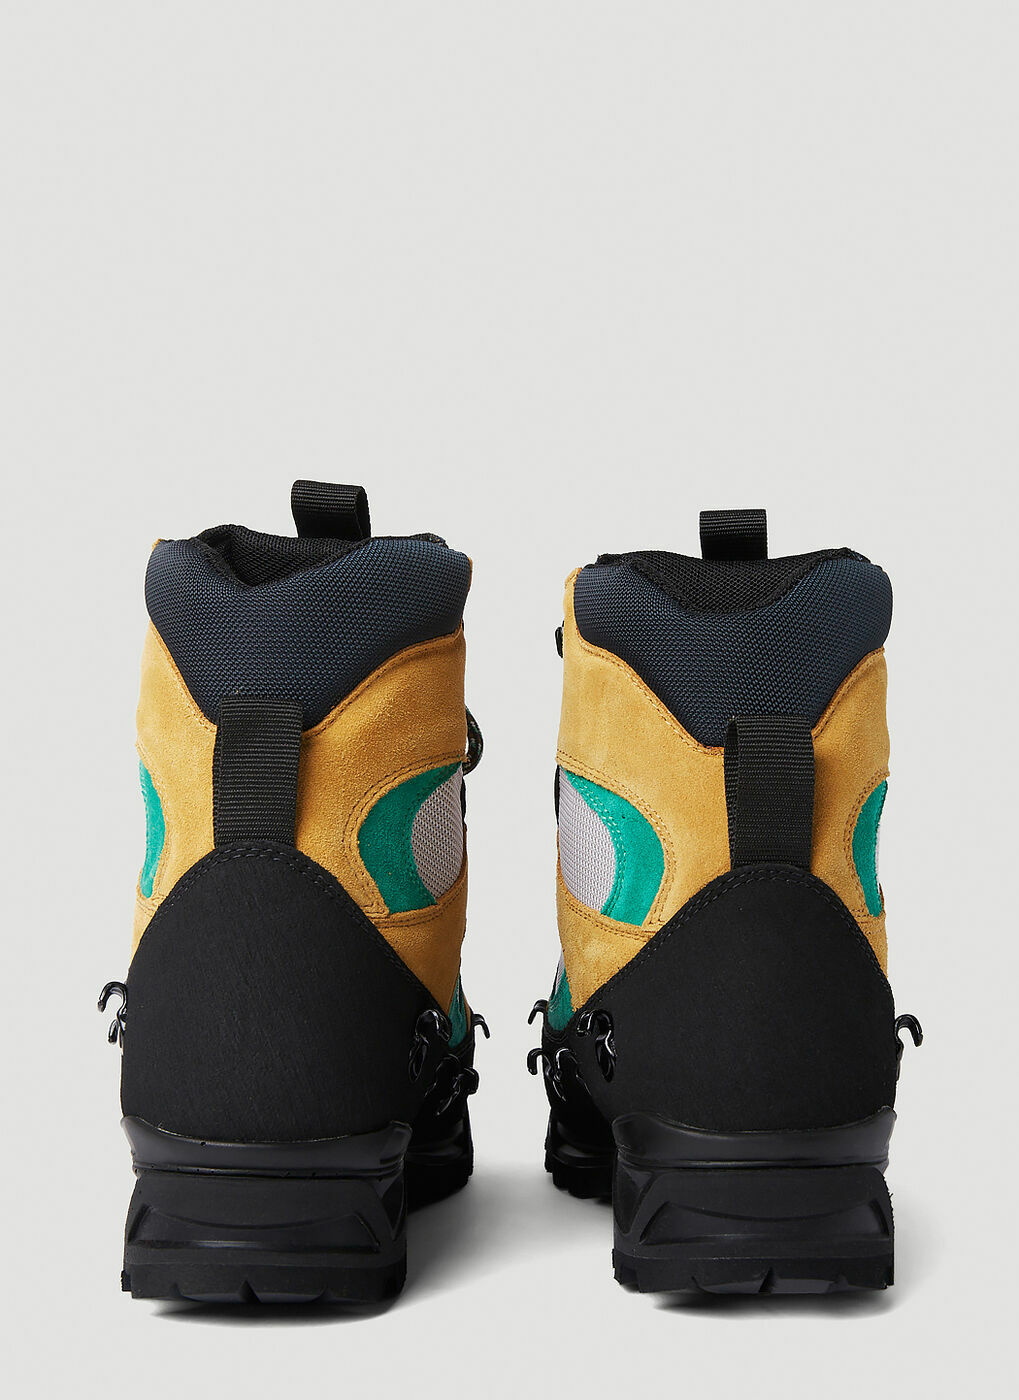 x Diemme Civetta Hiking Boots in Black Y/Project